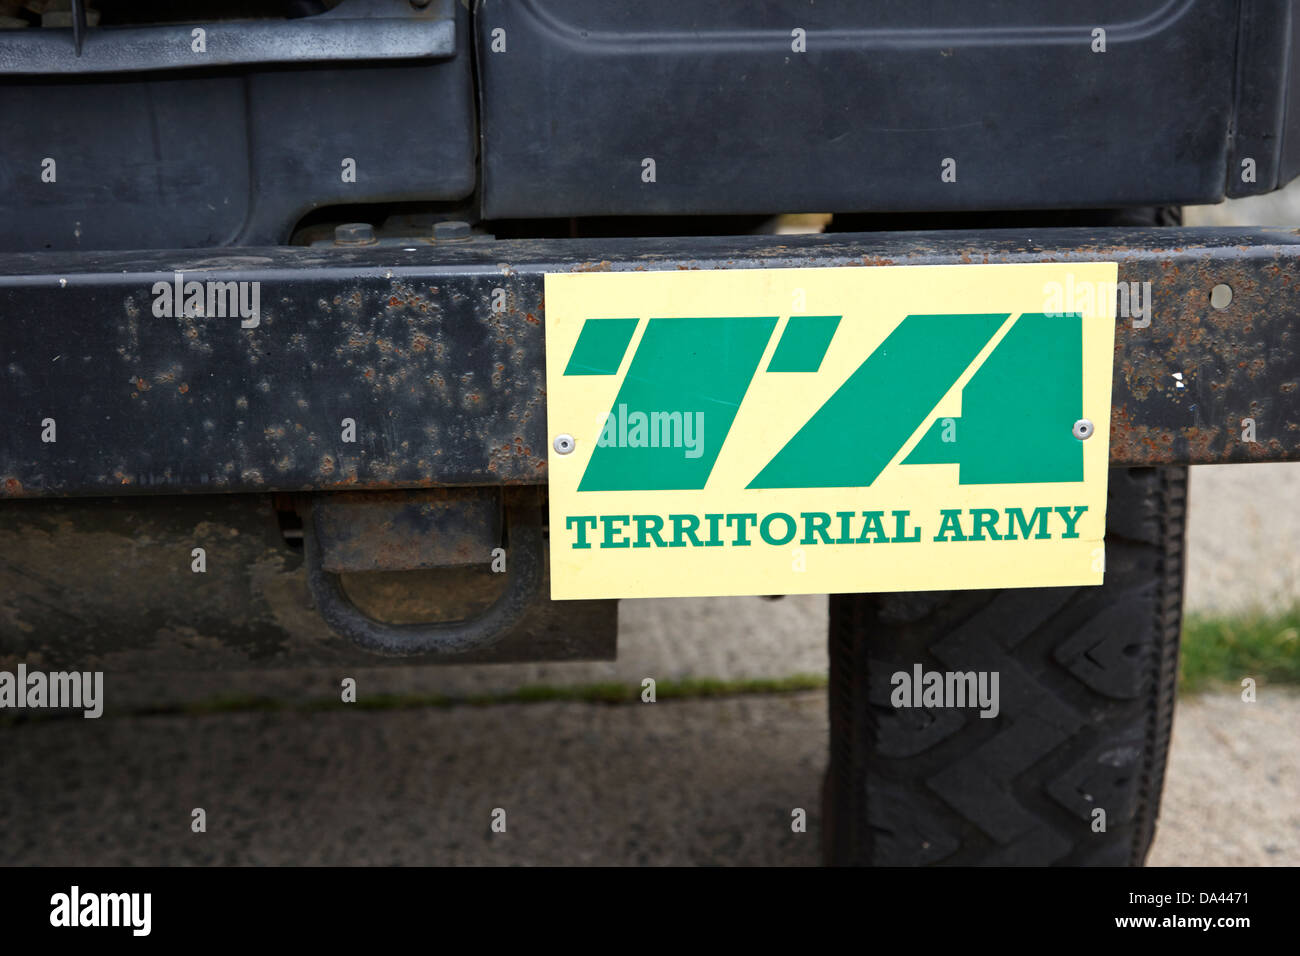 British Army esercito territoriale logo su un landrover nel Regno Unito Foto Stock